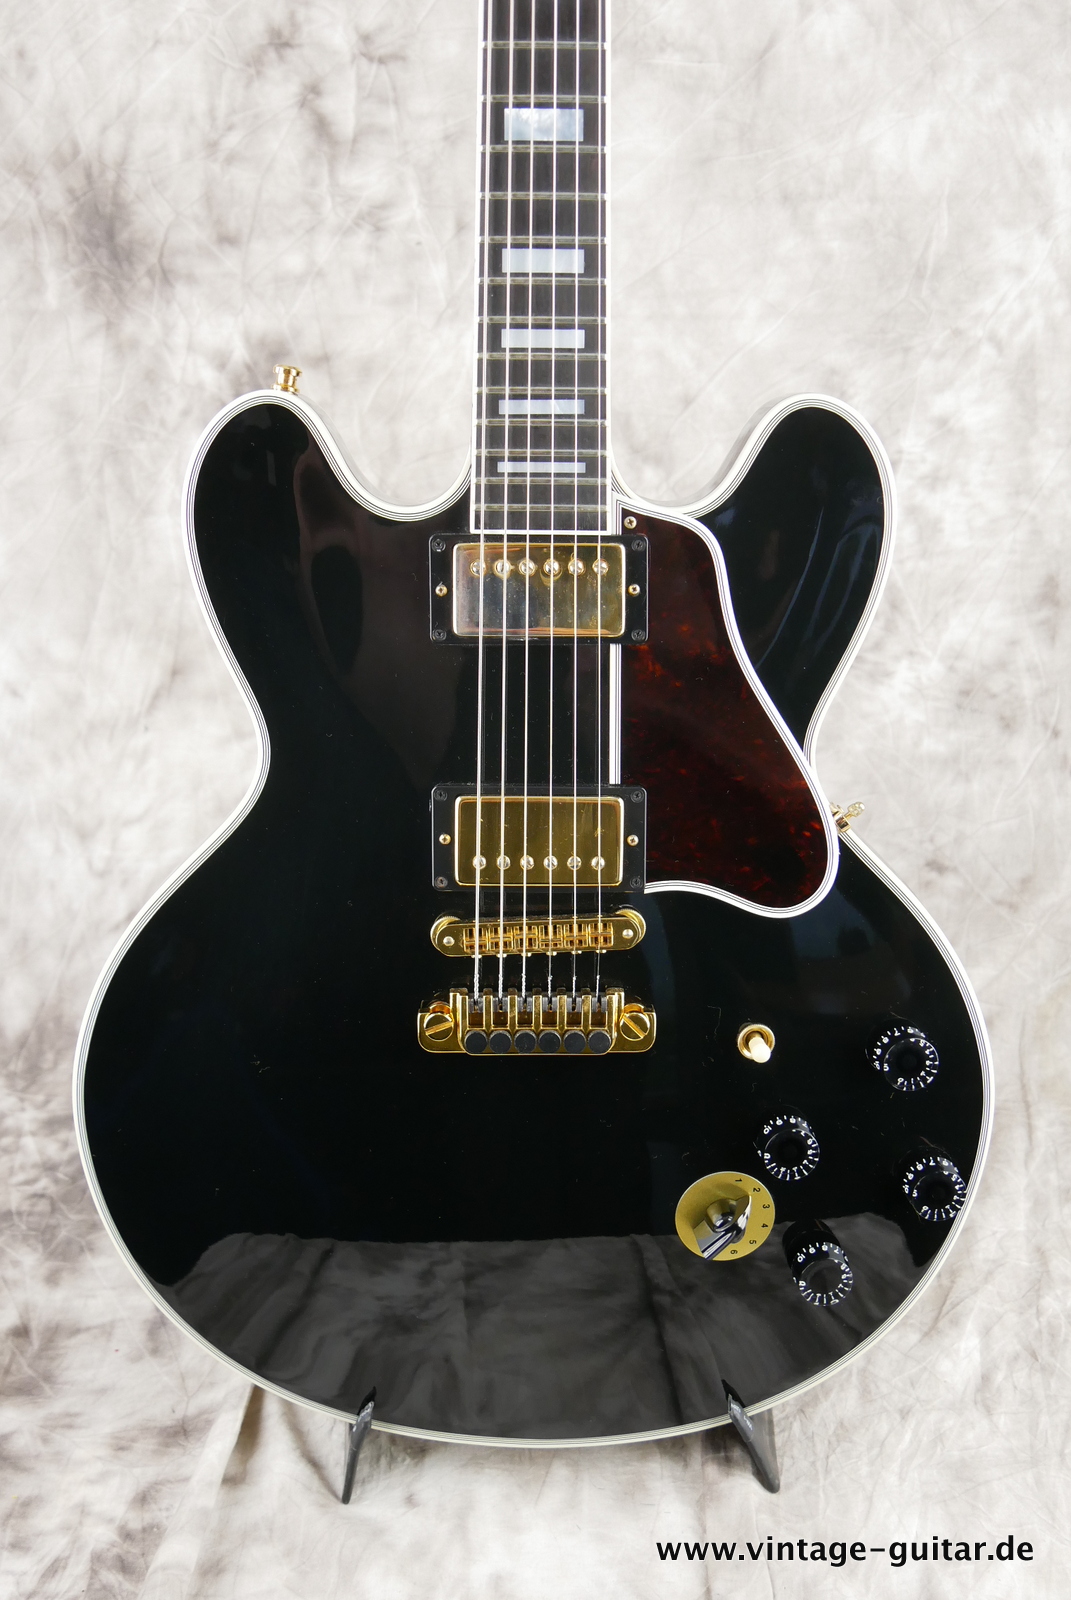 img/vintage/5532/Gibson-bb-king-lucille-stereo-1995-black-007.JPG